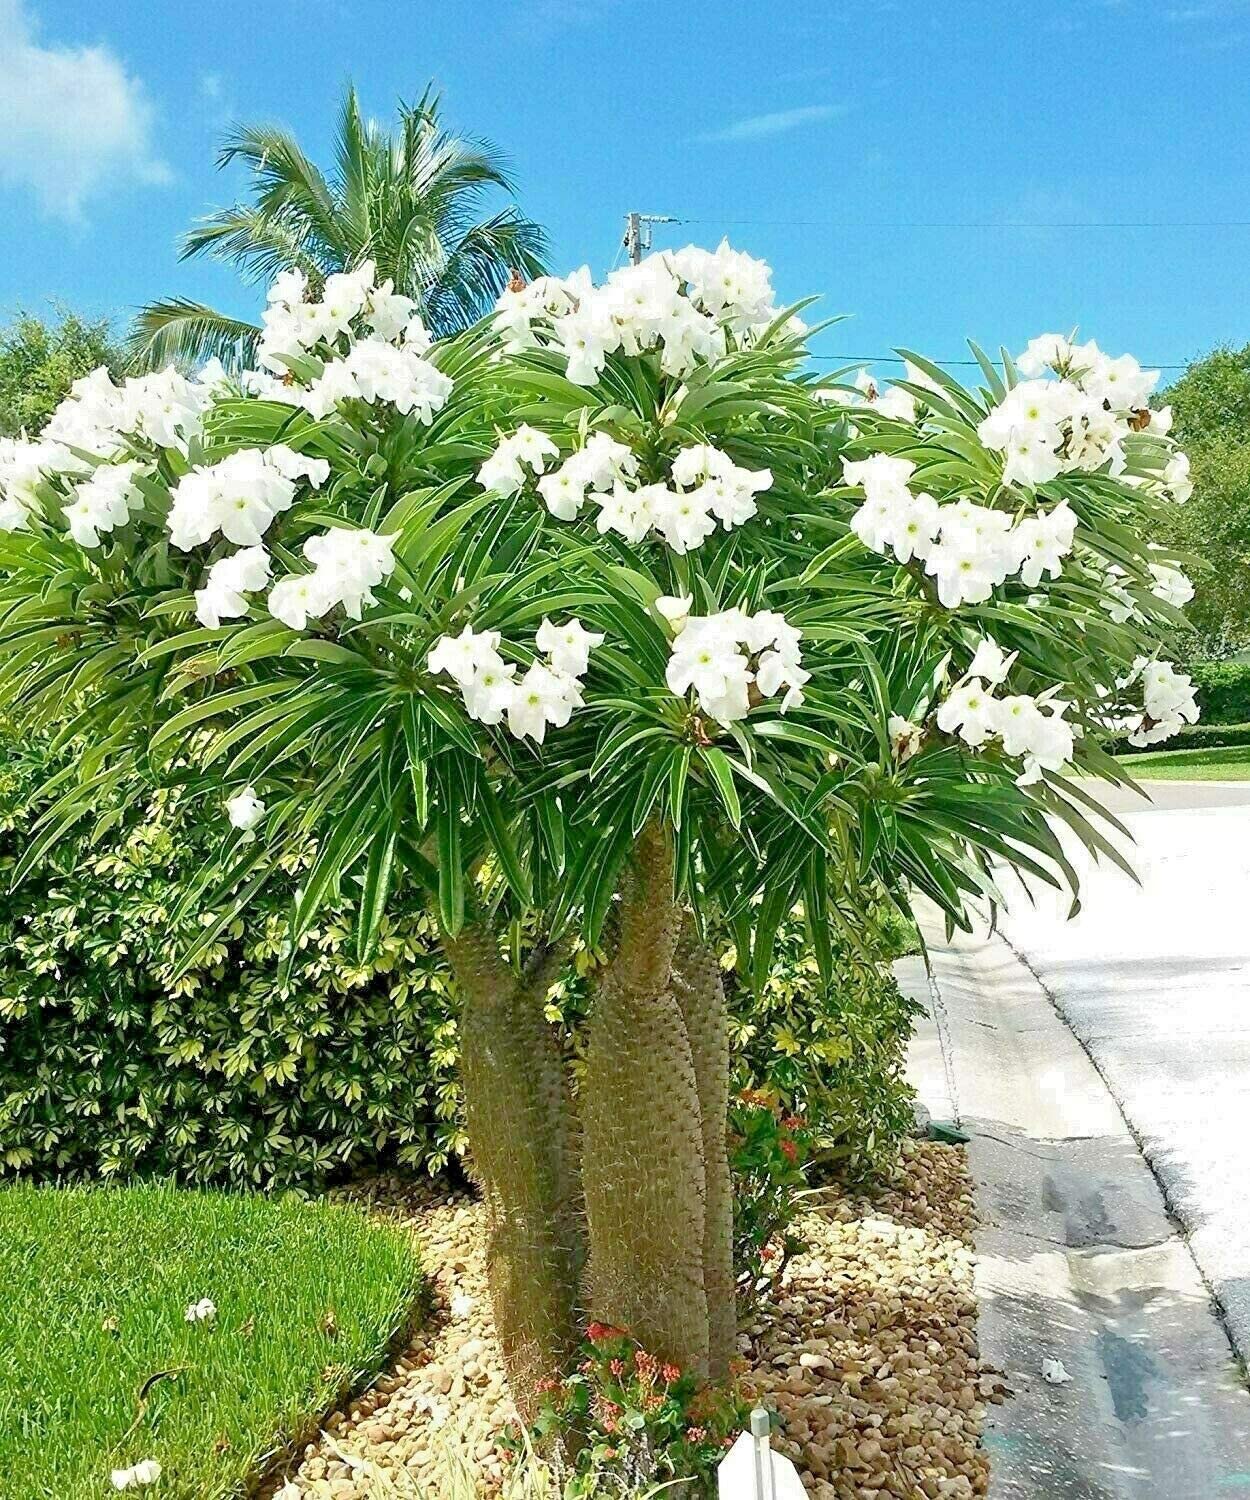 Pachypodium geayi @ rare Madagascar Palm Plant Cactus Cacti caudex Bonsai 4